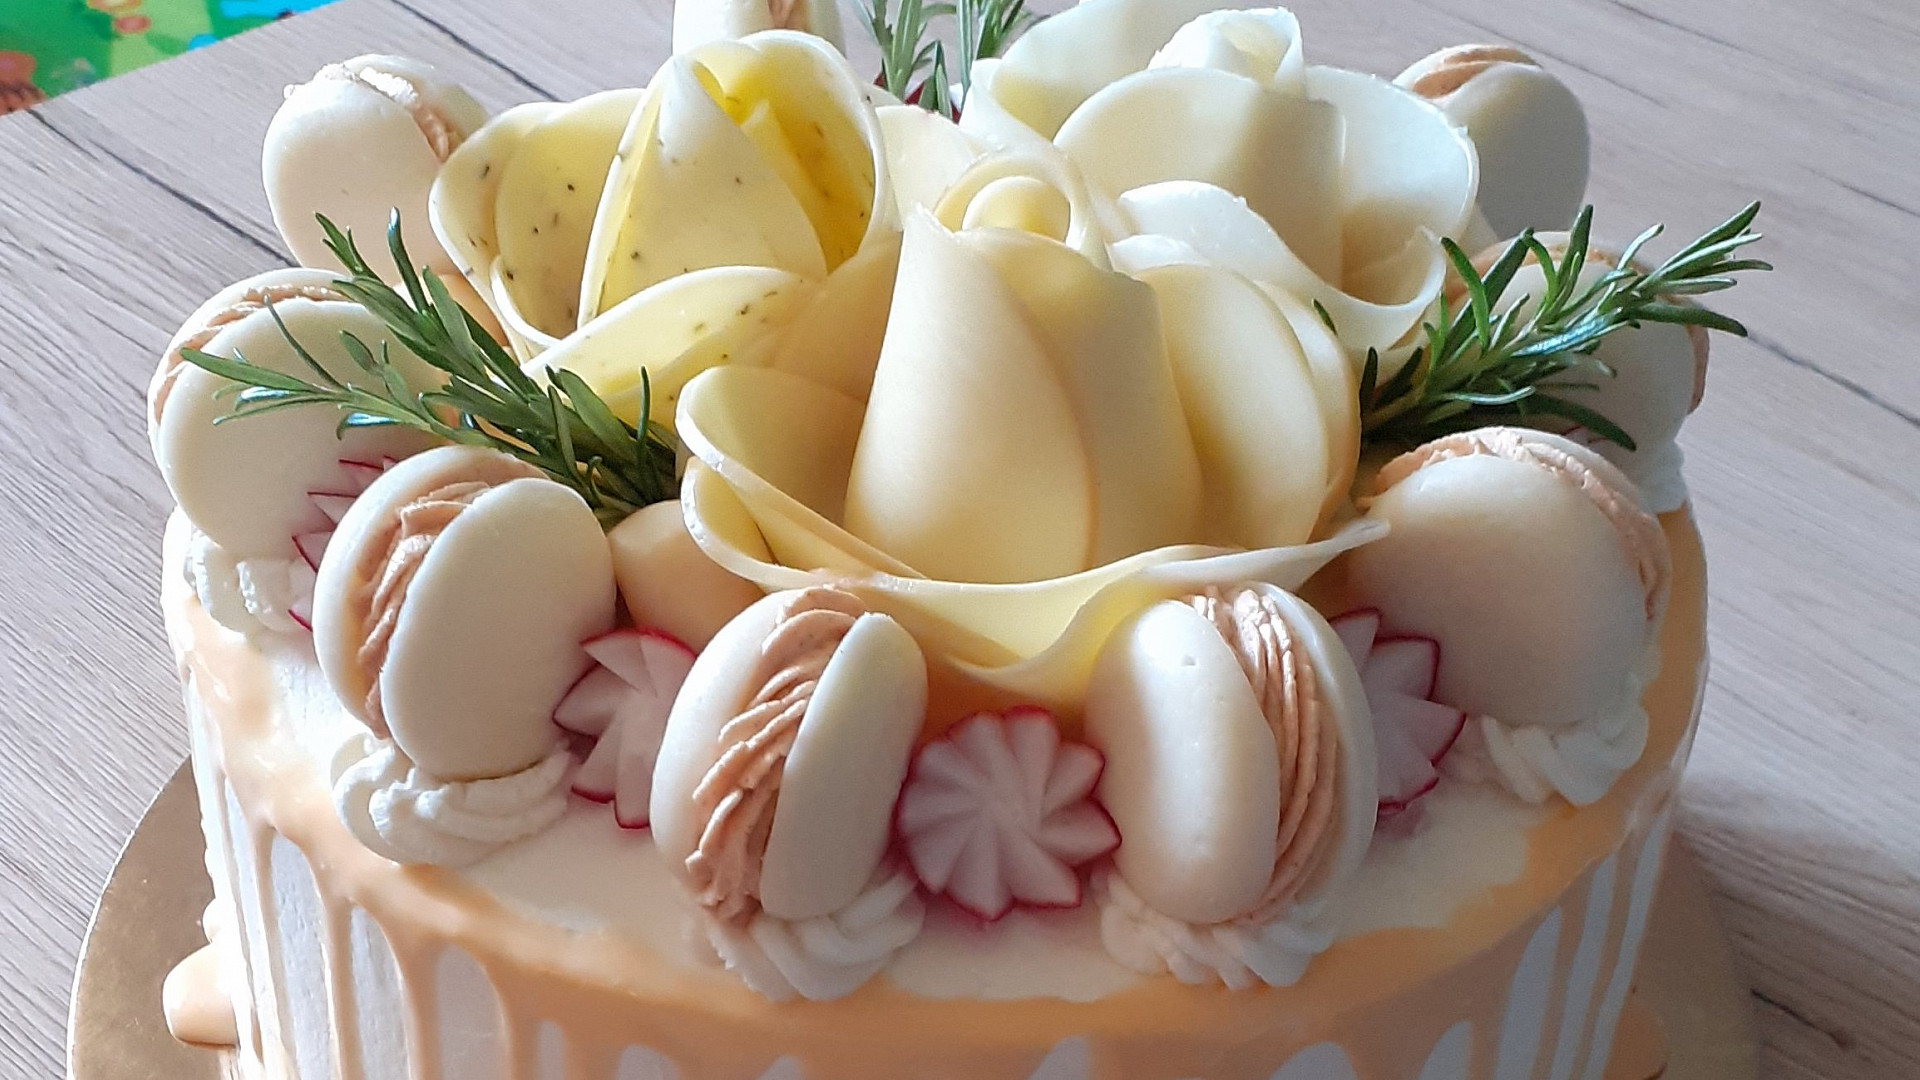 Fotogalerie: Hitem sociálních sítí je tento slaný dort z kynutého těsta ...